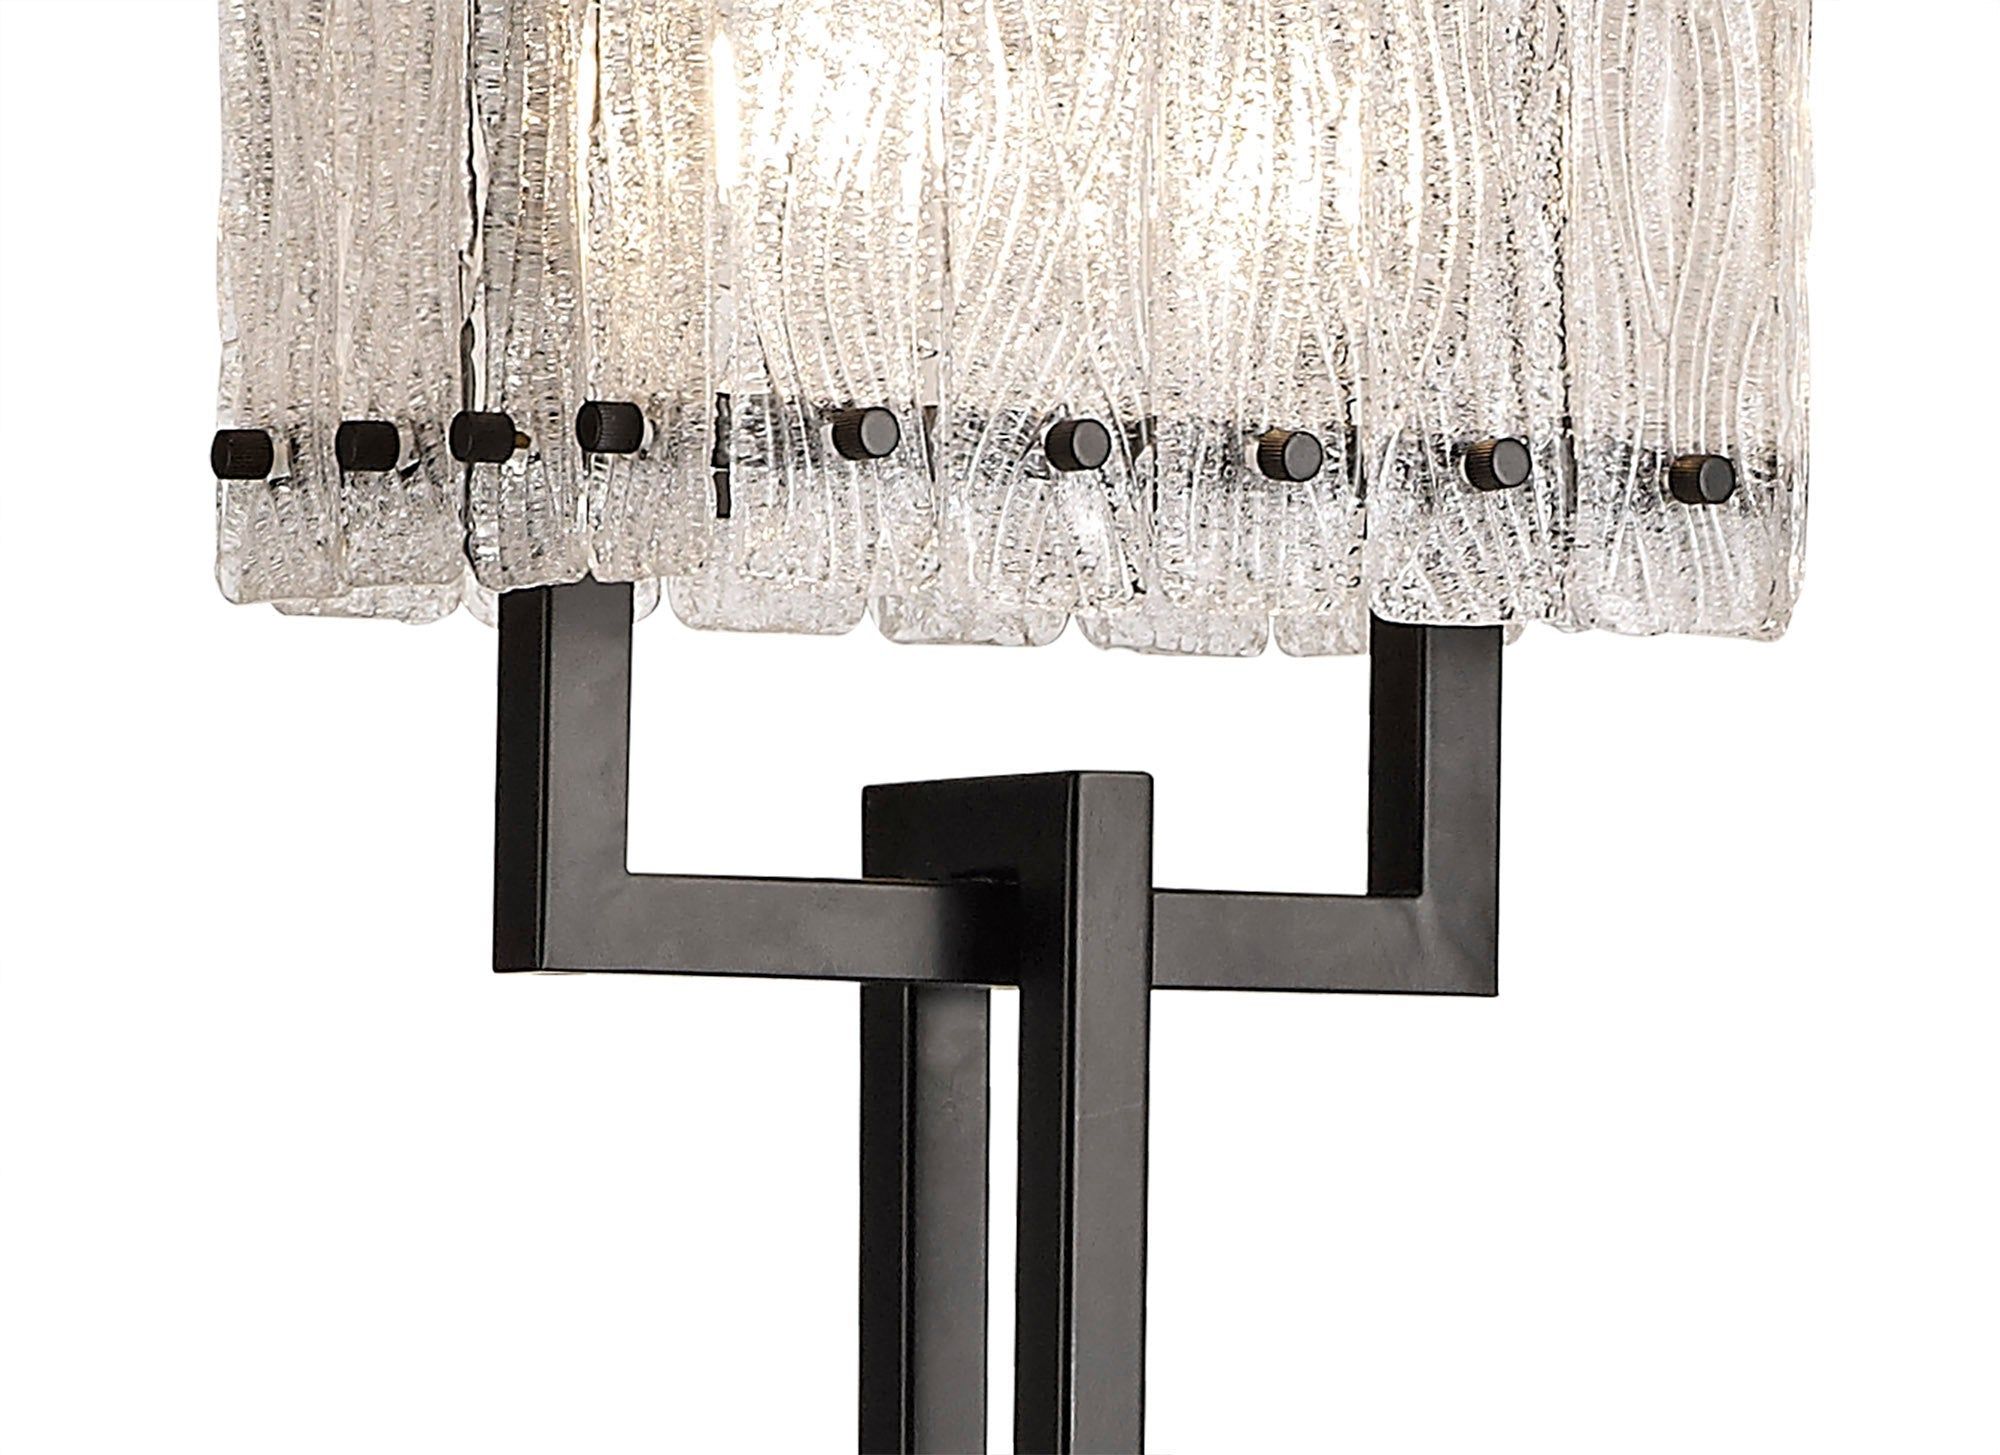 Vimonia Floor Lamp, 2 Light E27, Matt Black/Crystal Sand Glass